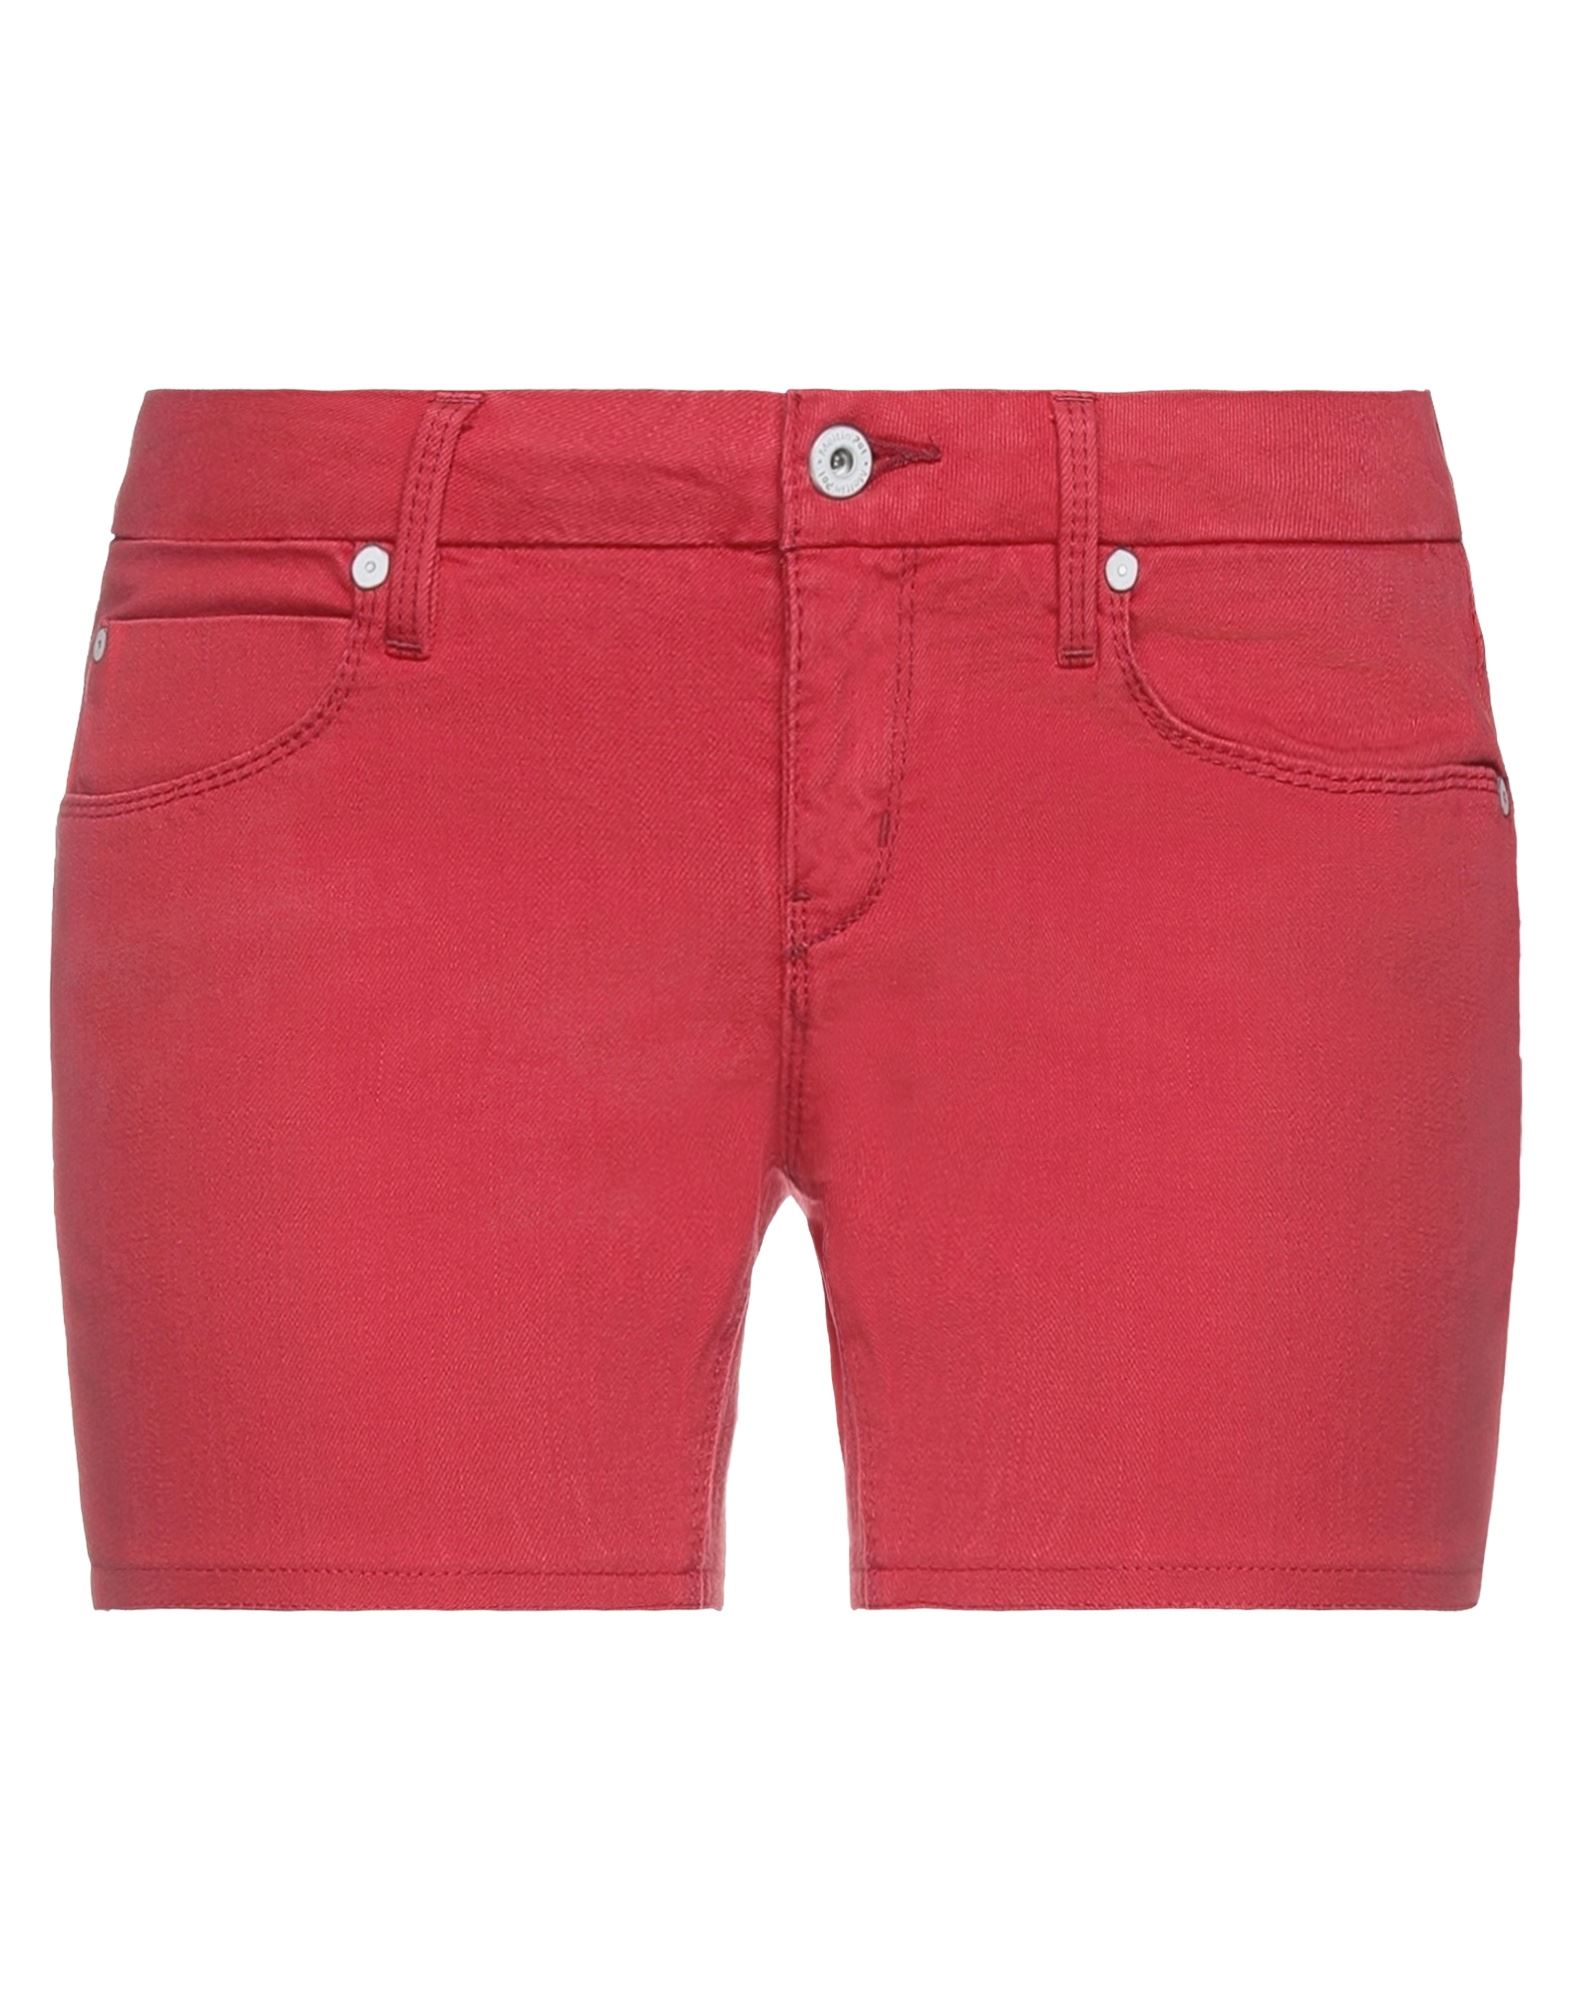 Meltin' Pot Denim Shorts In Red